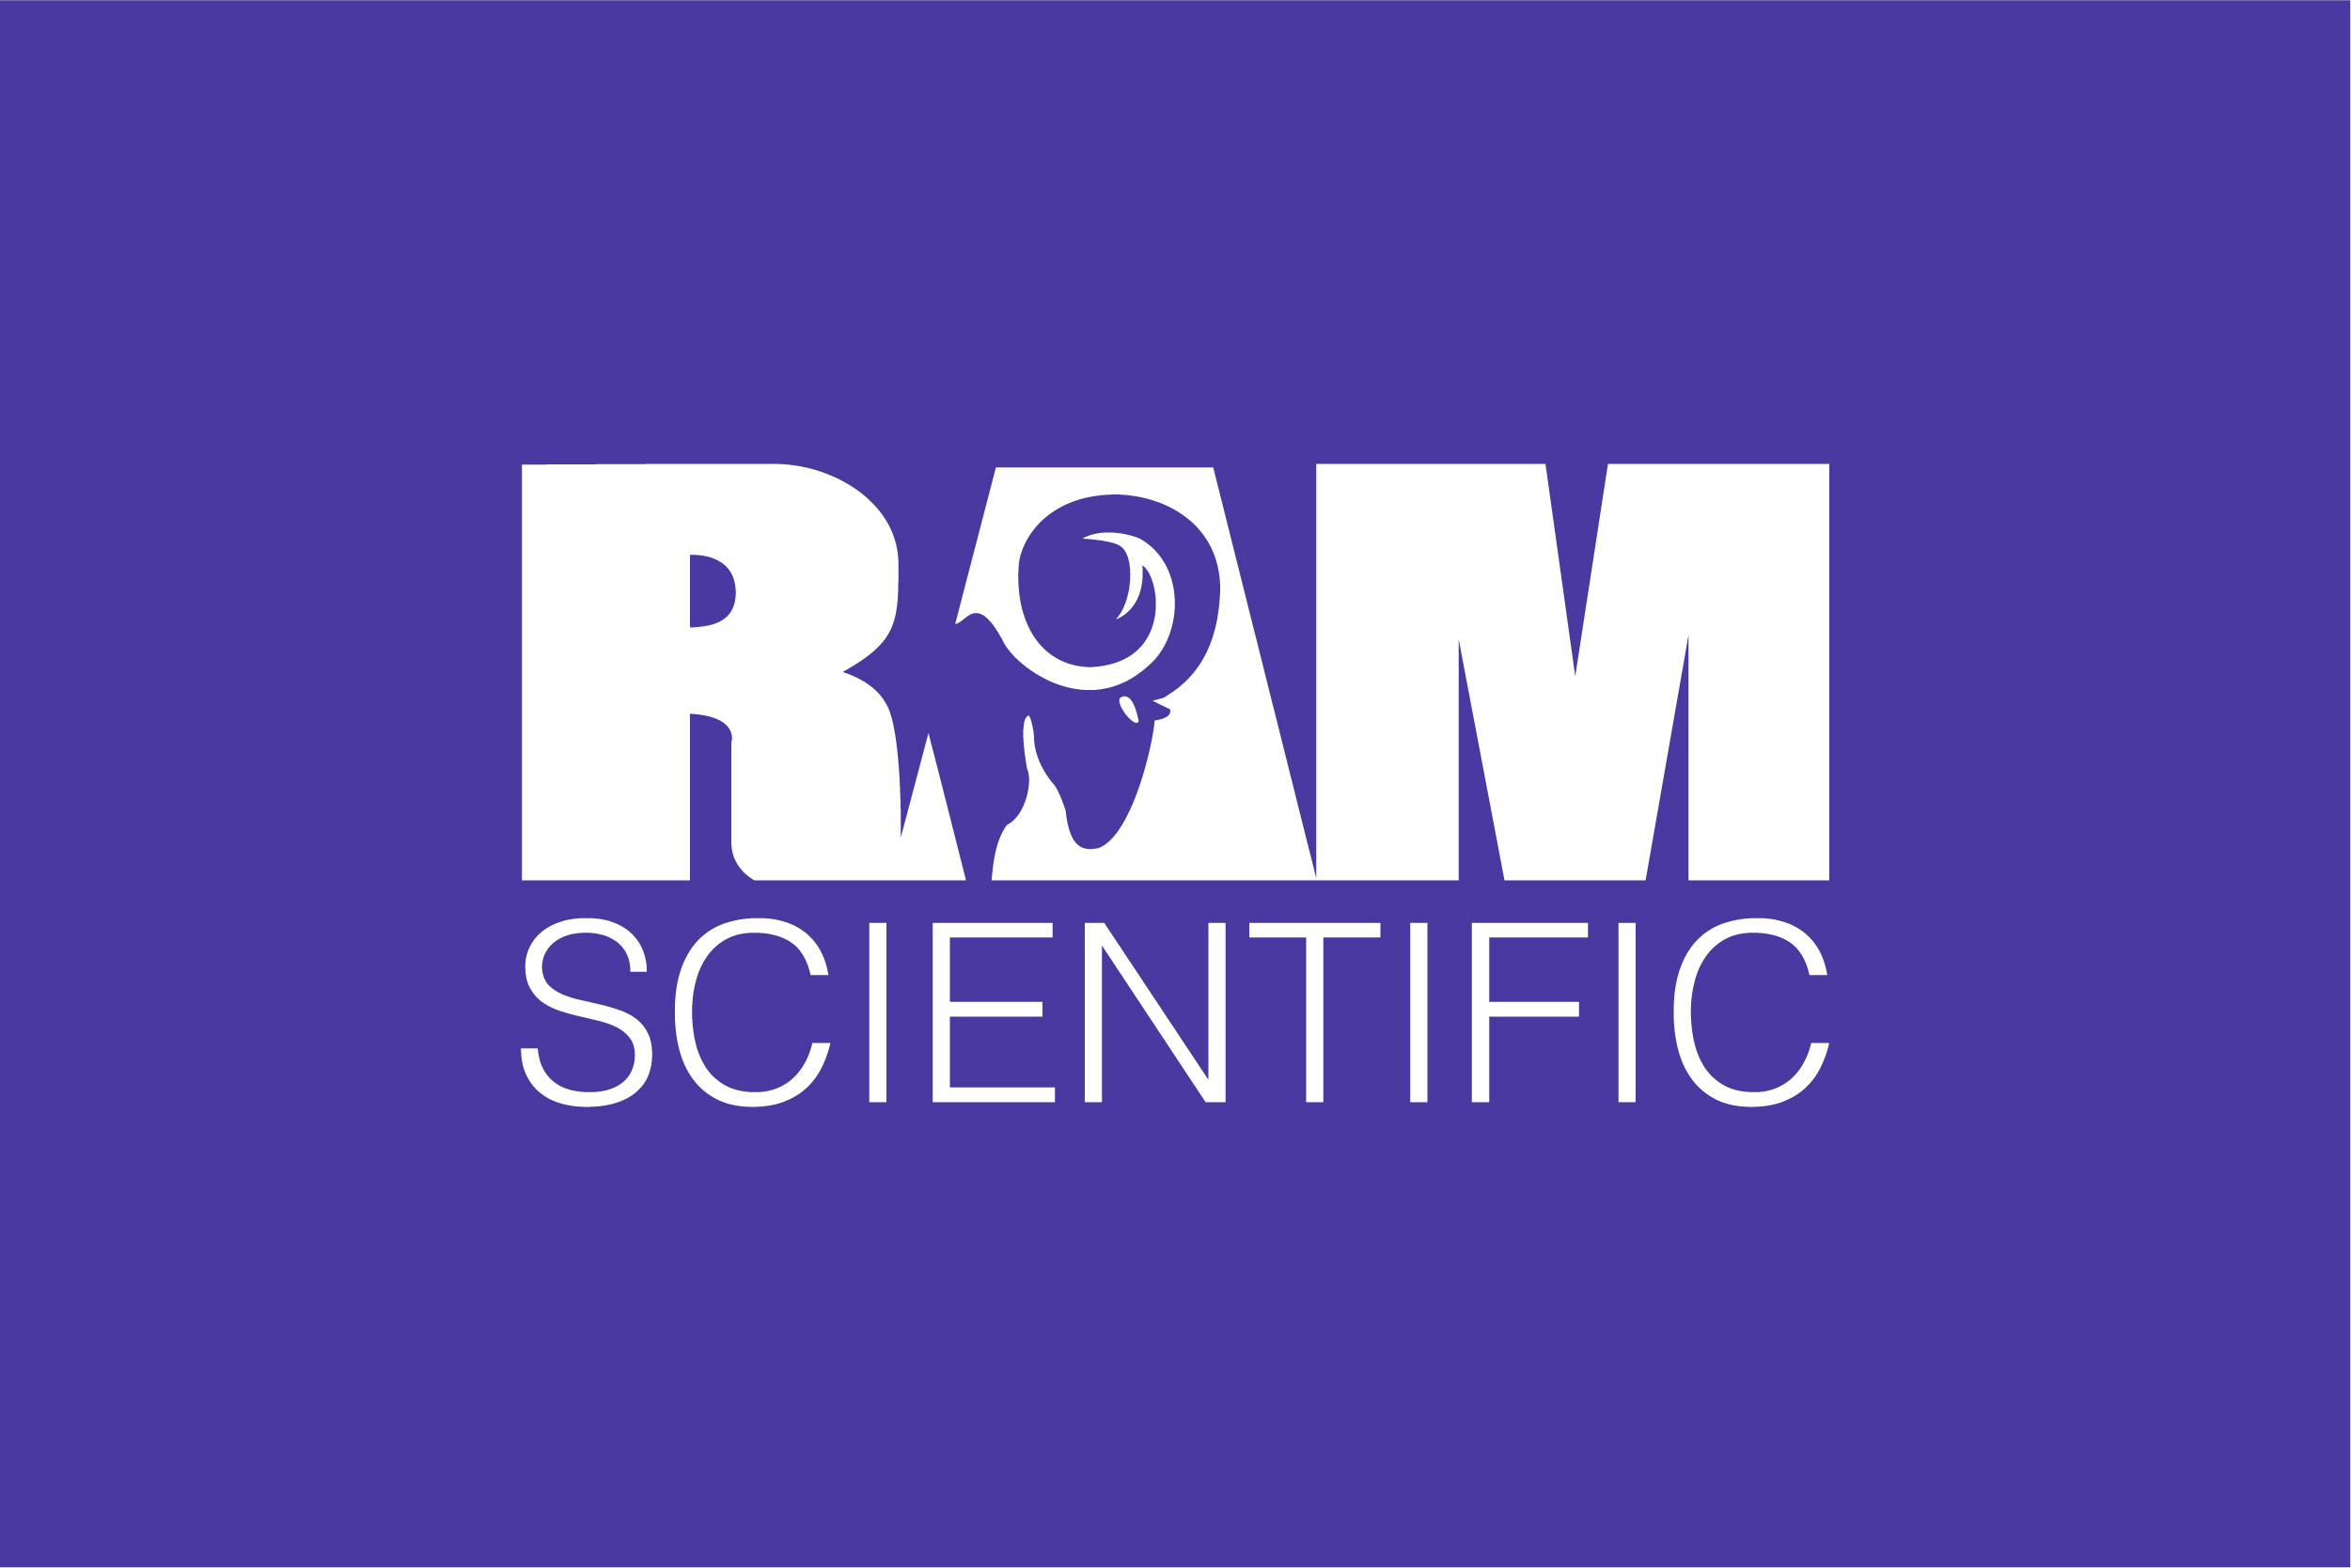 RAM Scientific